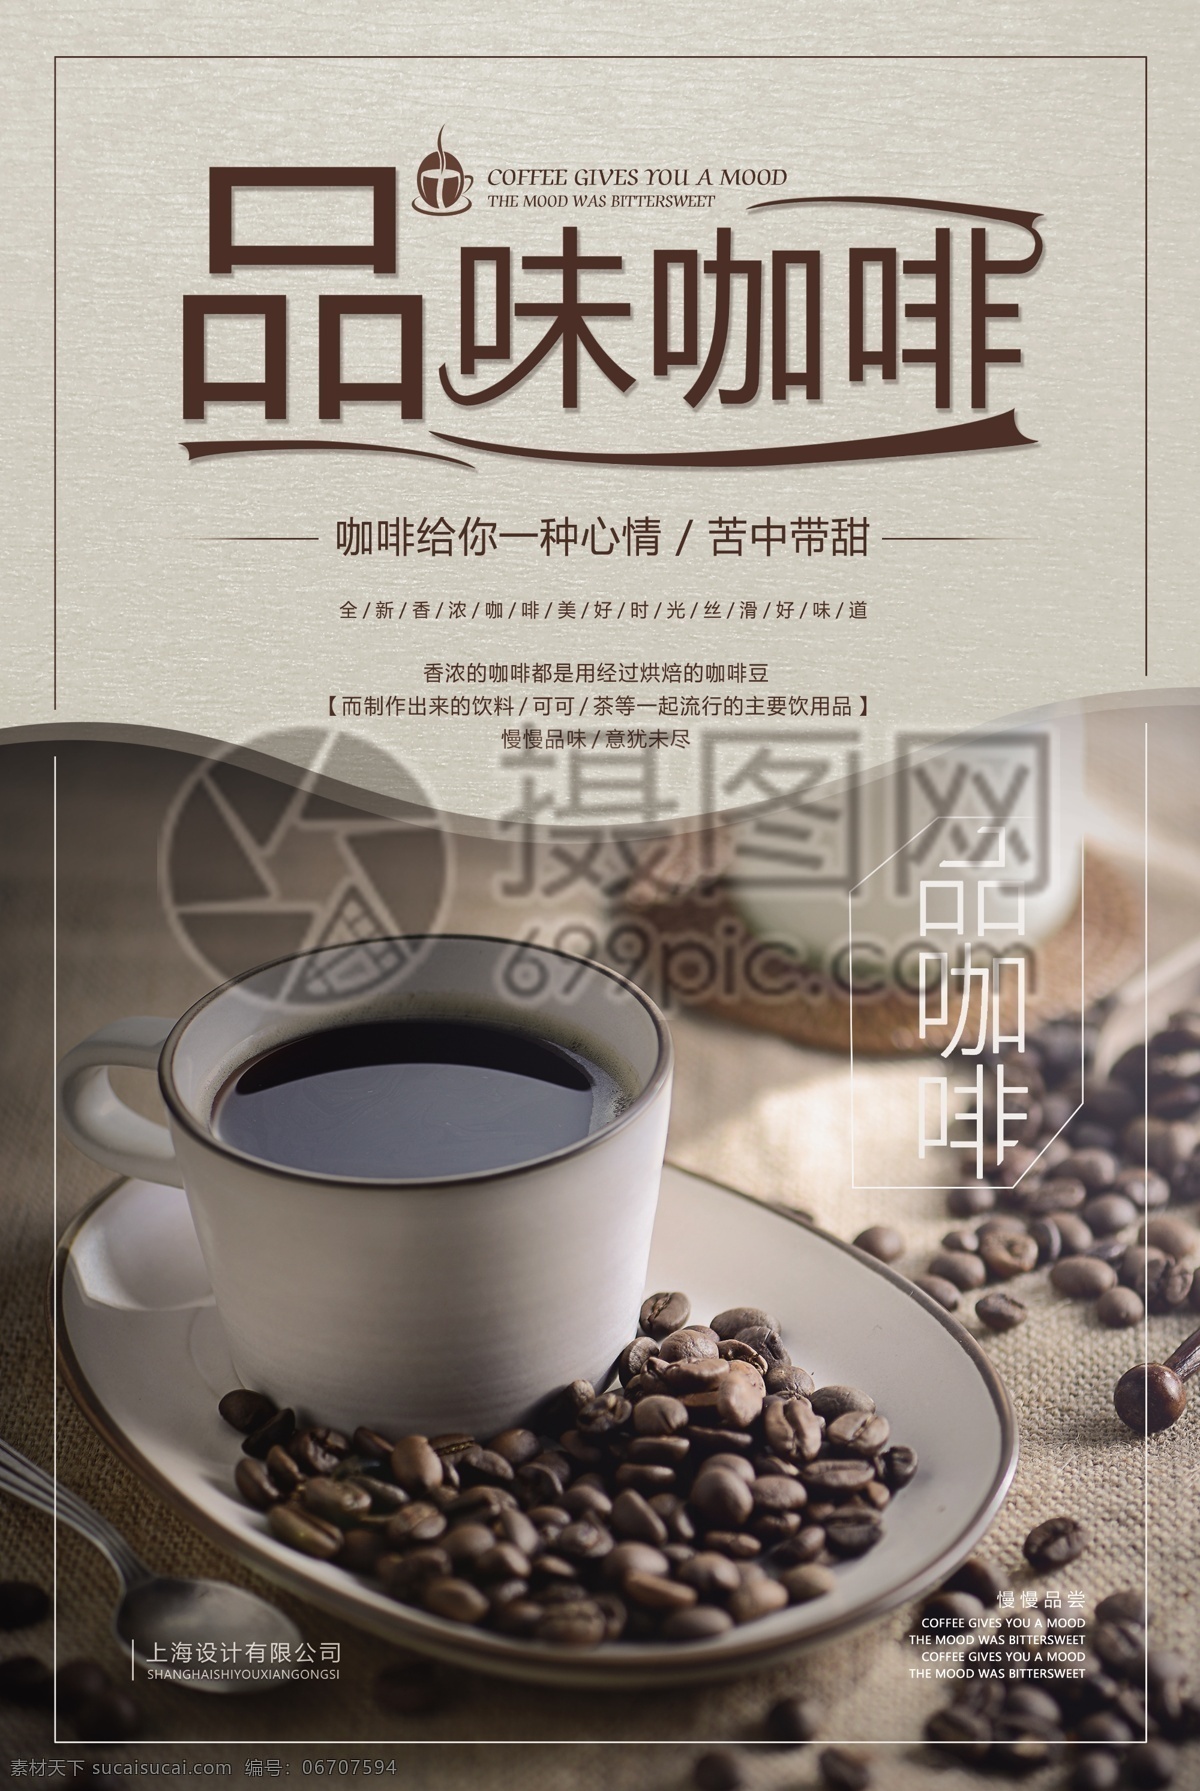 品味 咖啡 冬季 热饮 海报 热咖啡海报 热咖啡 咖啡海报 咖啡海报设计 冬季热饮